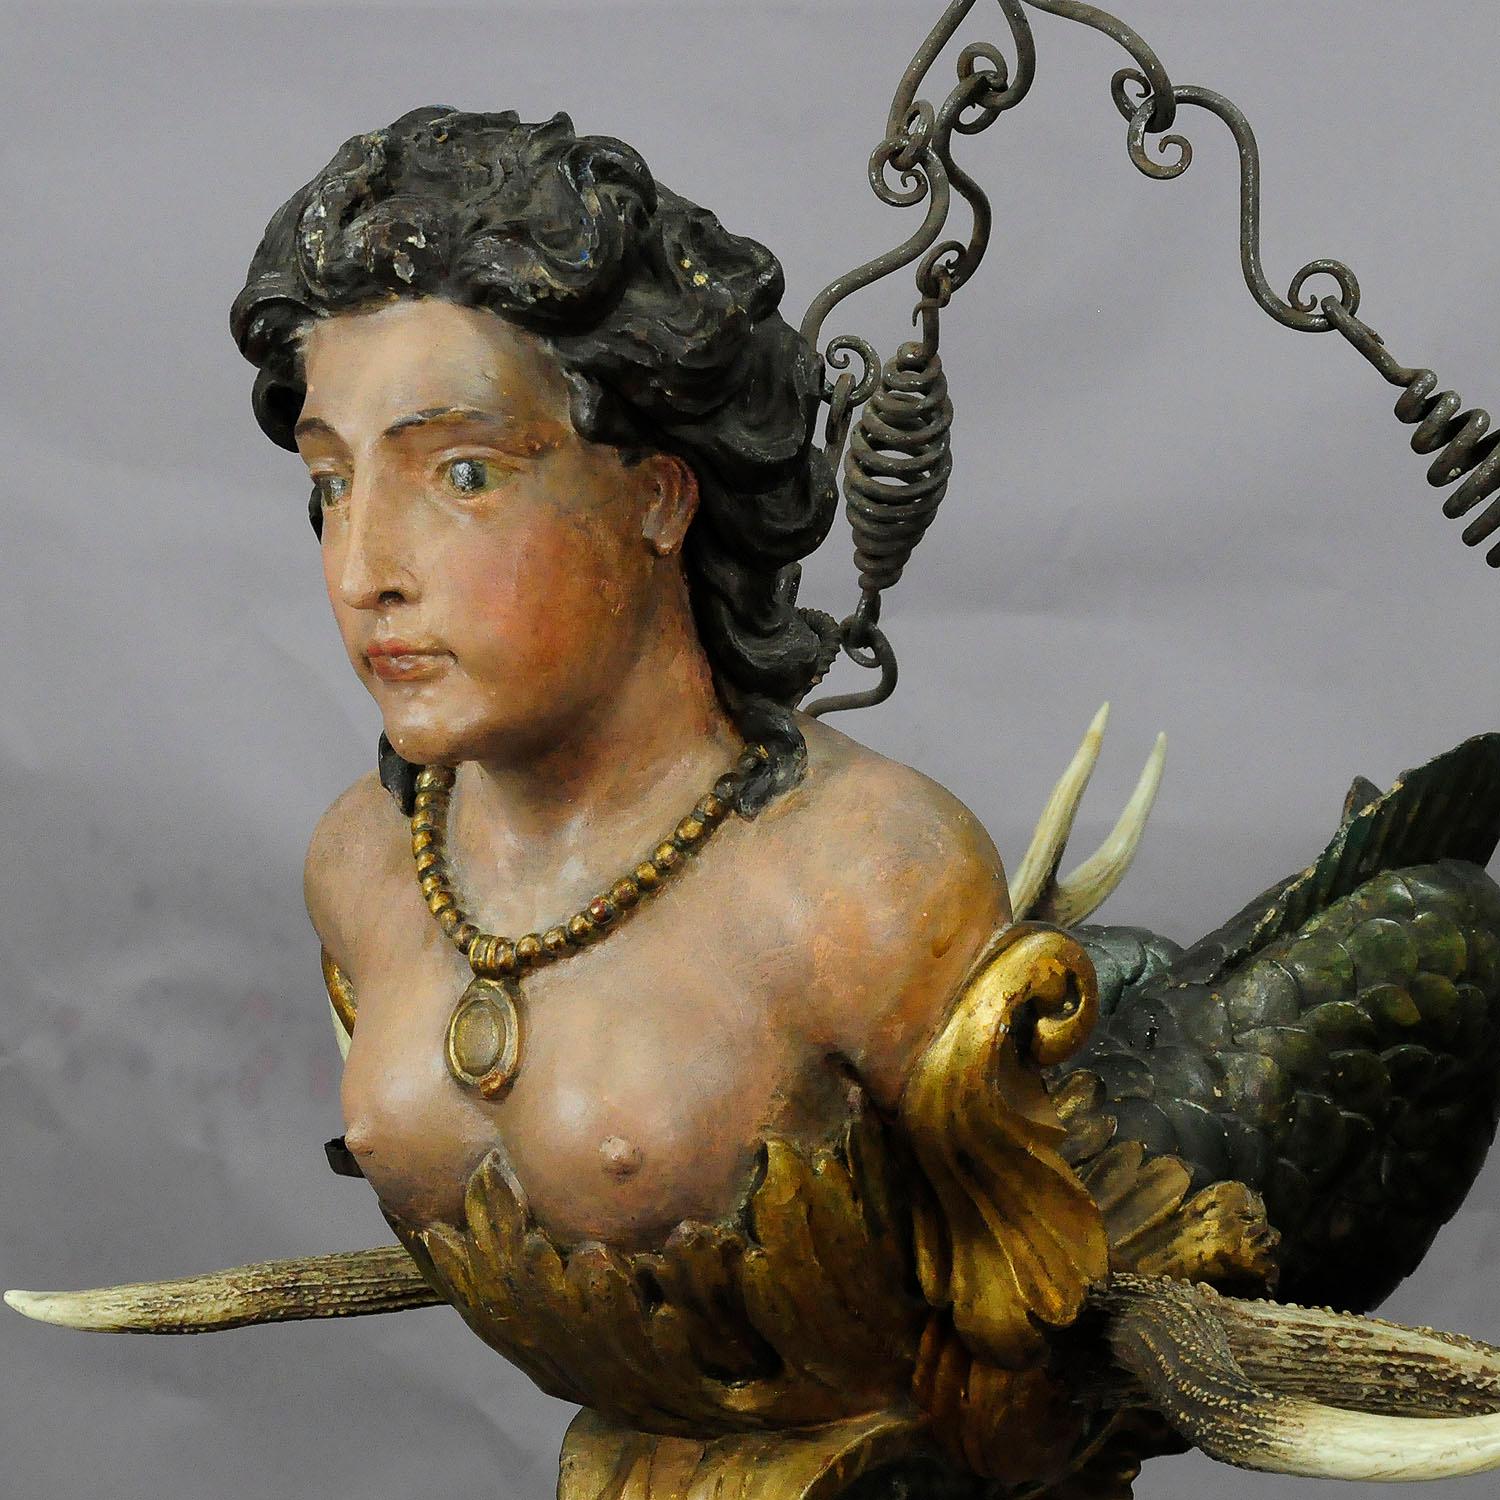 Ein wunderschönes antikes Lüsterweibchen aus dem 18. Jahrhundert. Eine kunstvoll geschnitzte und große Meerjungfrauenstatue:: die an einem beeindruckenden Hirschgeweih befestigt ist. Vier handgeschmiedete Eisentüllen für Kerzen und eine